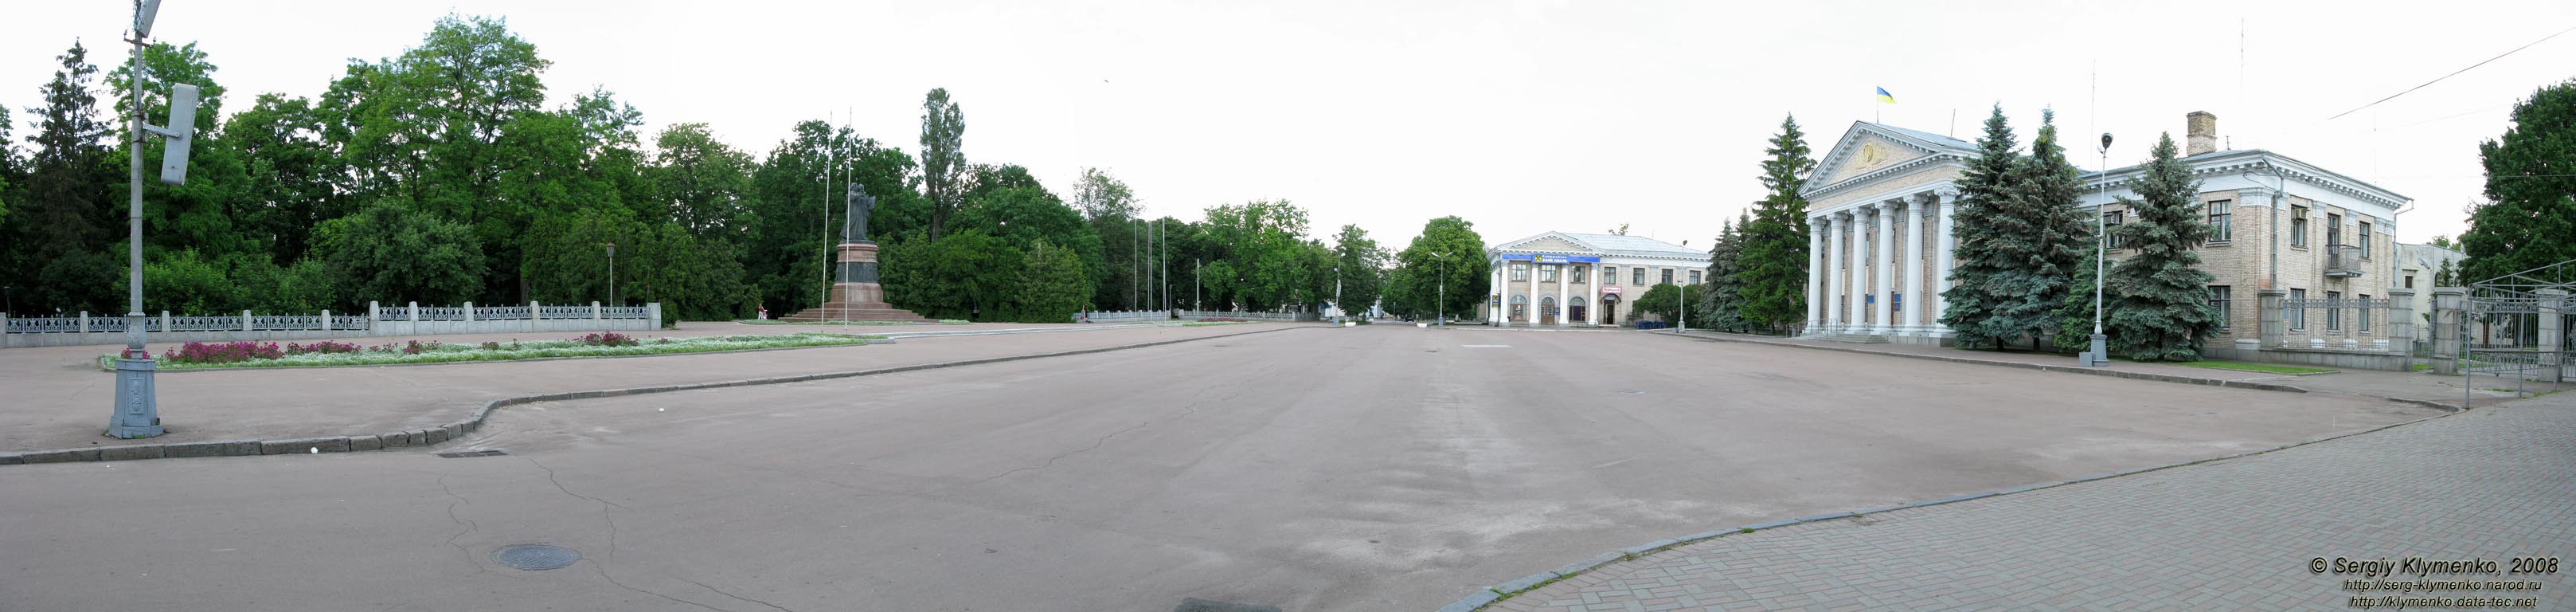 Переяслав-Хмельницкий. Площадь Богдана Хмельницкого (панорама ~ 180°).